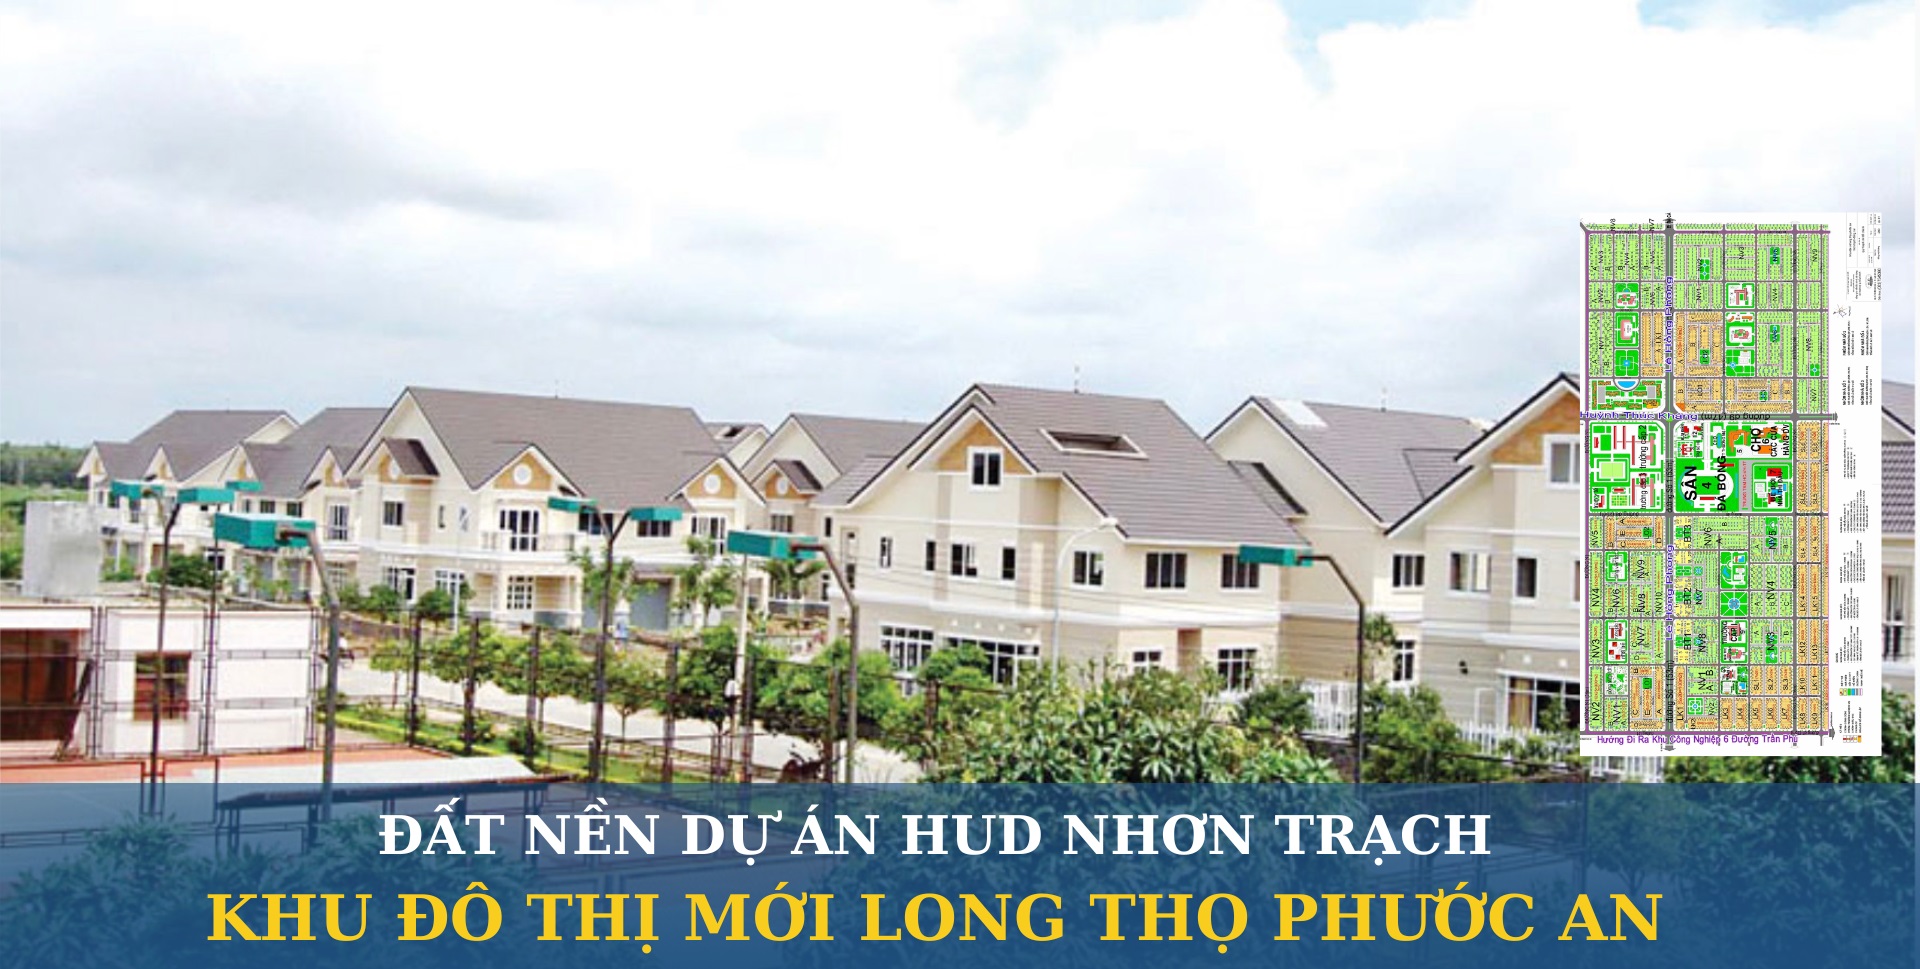 Saigonland Nhơn Trạch - Cần mua nhanh - bán nhanh đất nền dự án Hud Nhơn Trạch Đồng Nai - Ảnh 2